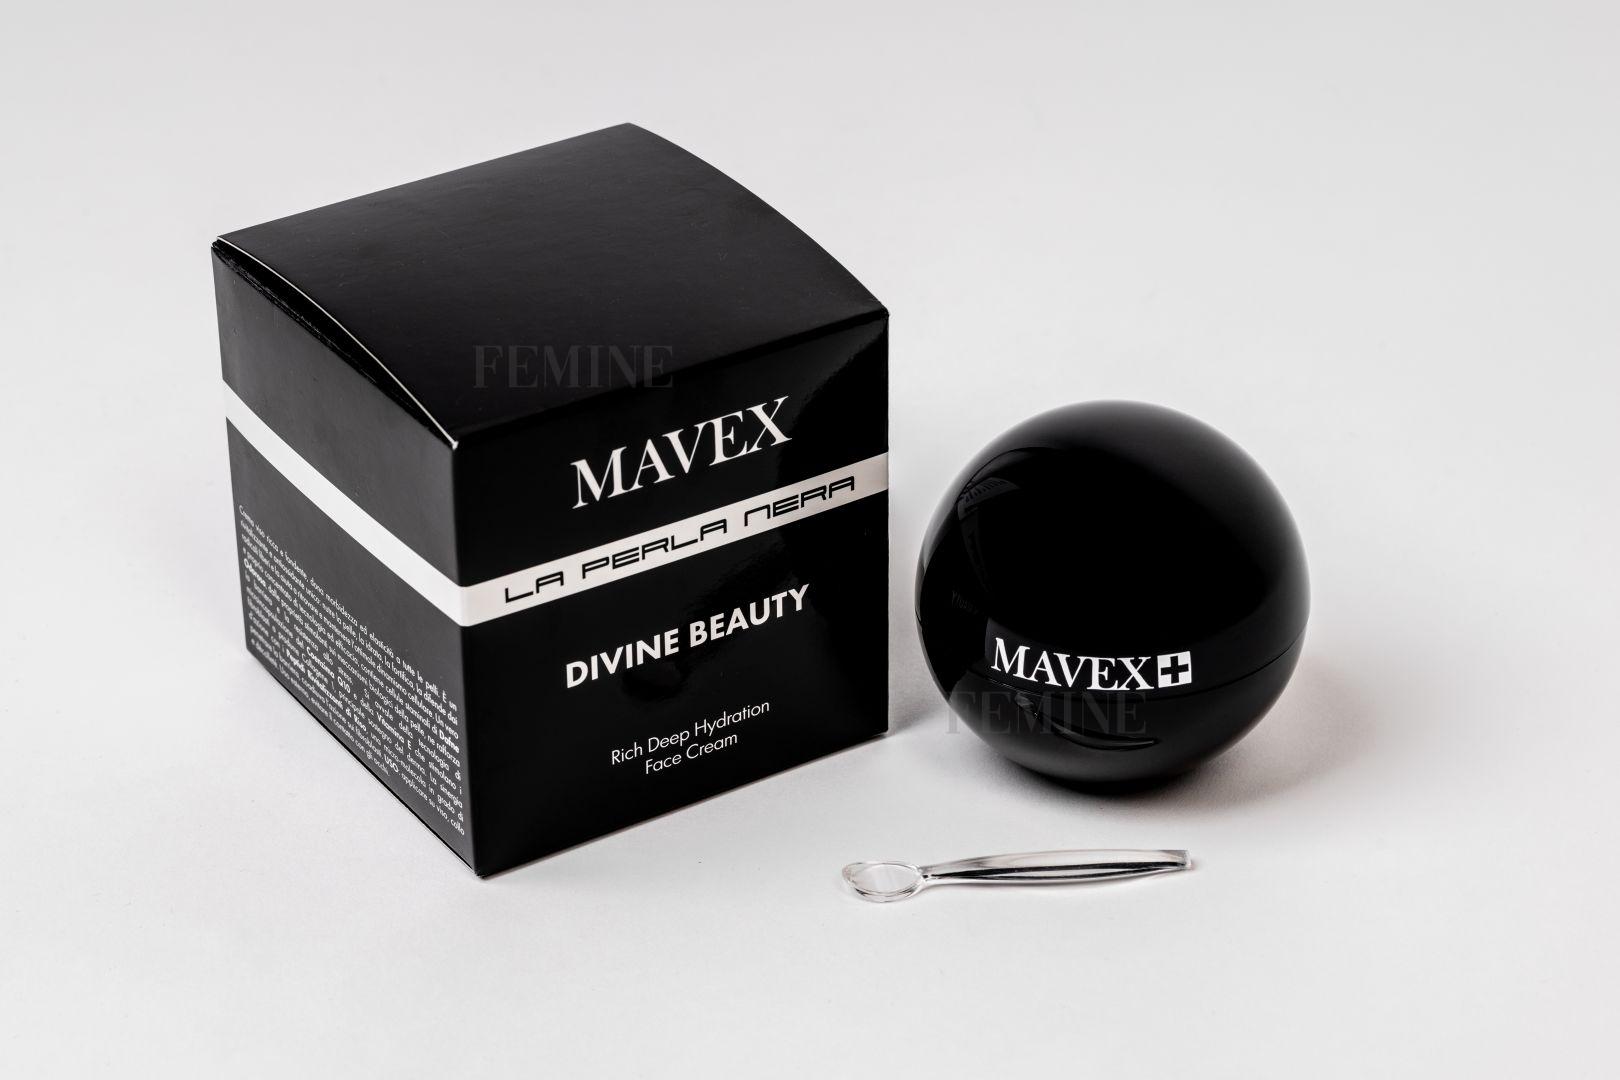 Mavex pleťový krém Divine Beauty 50ml